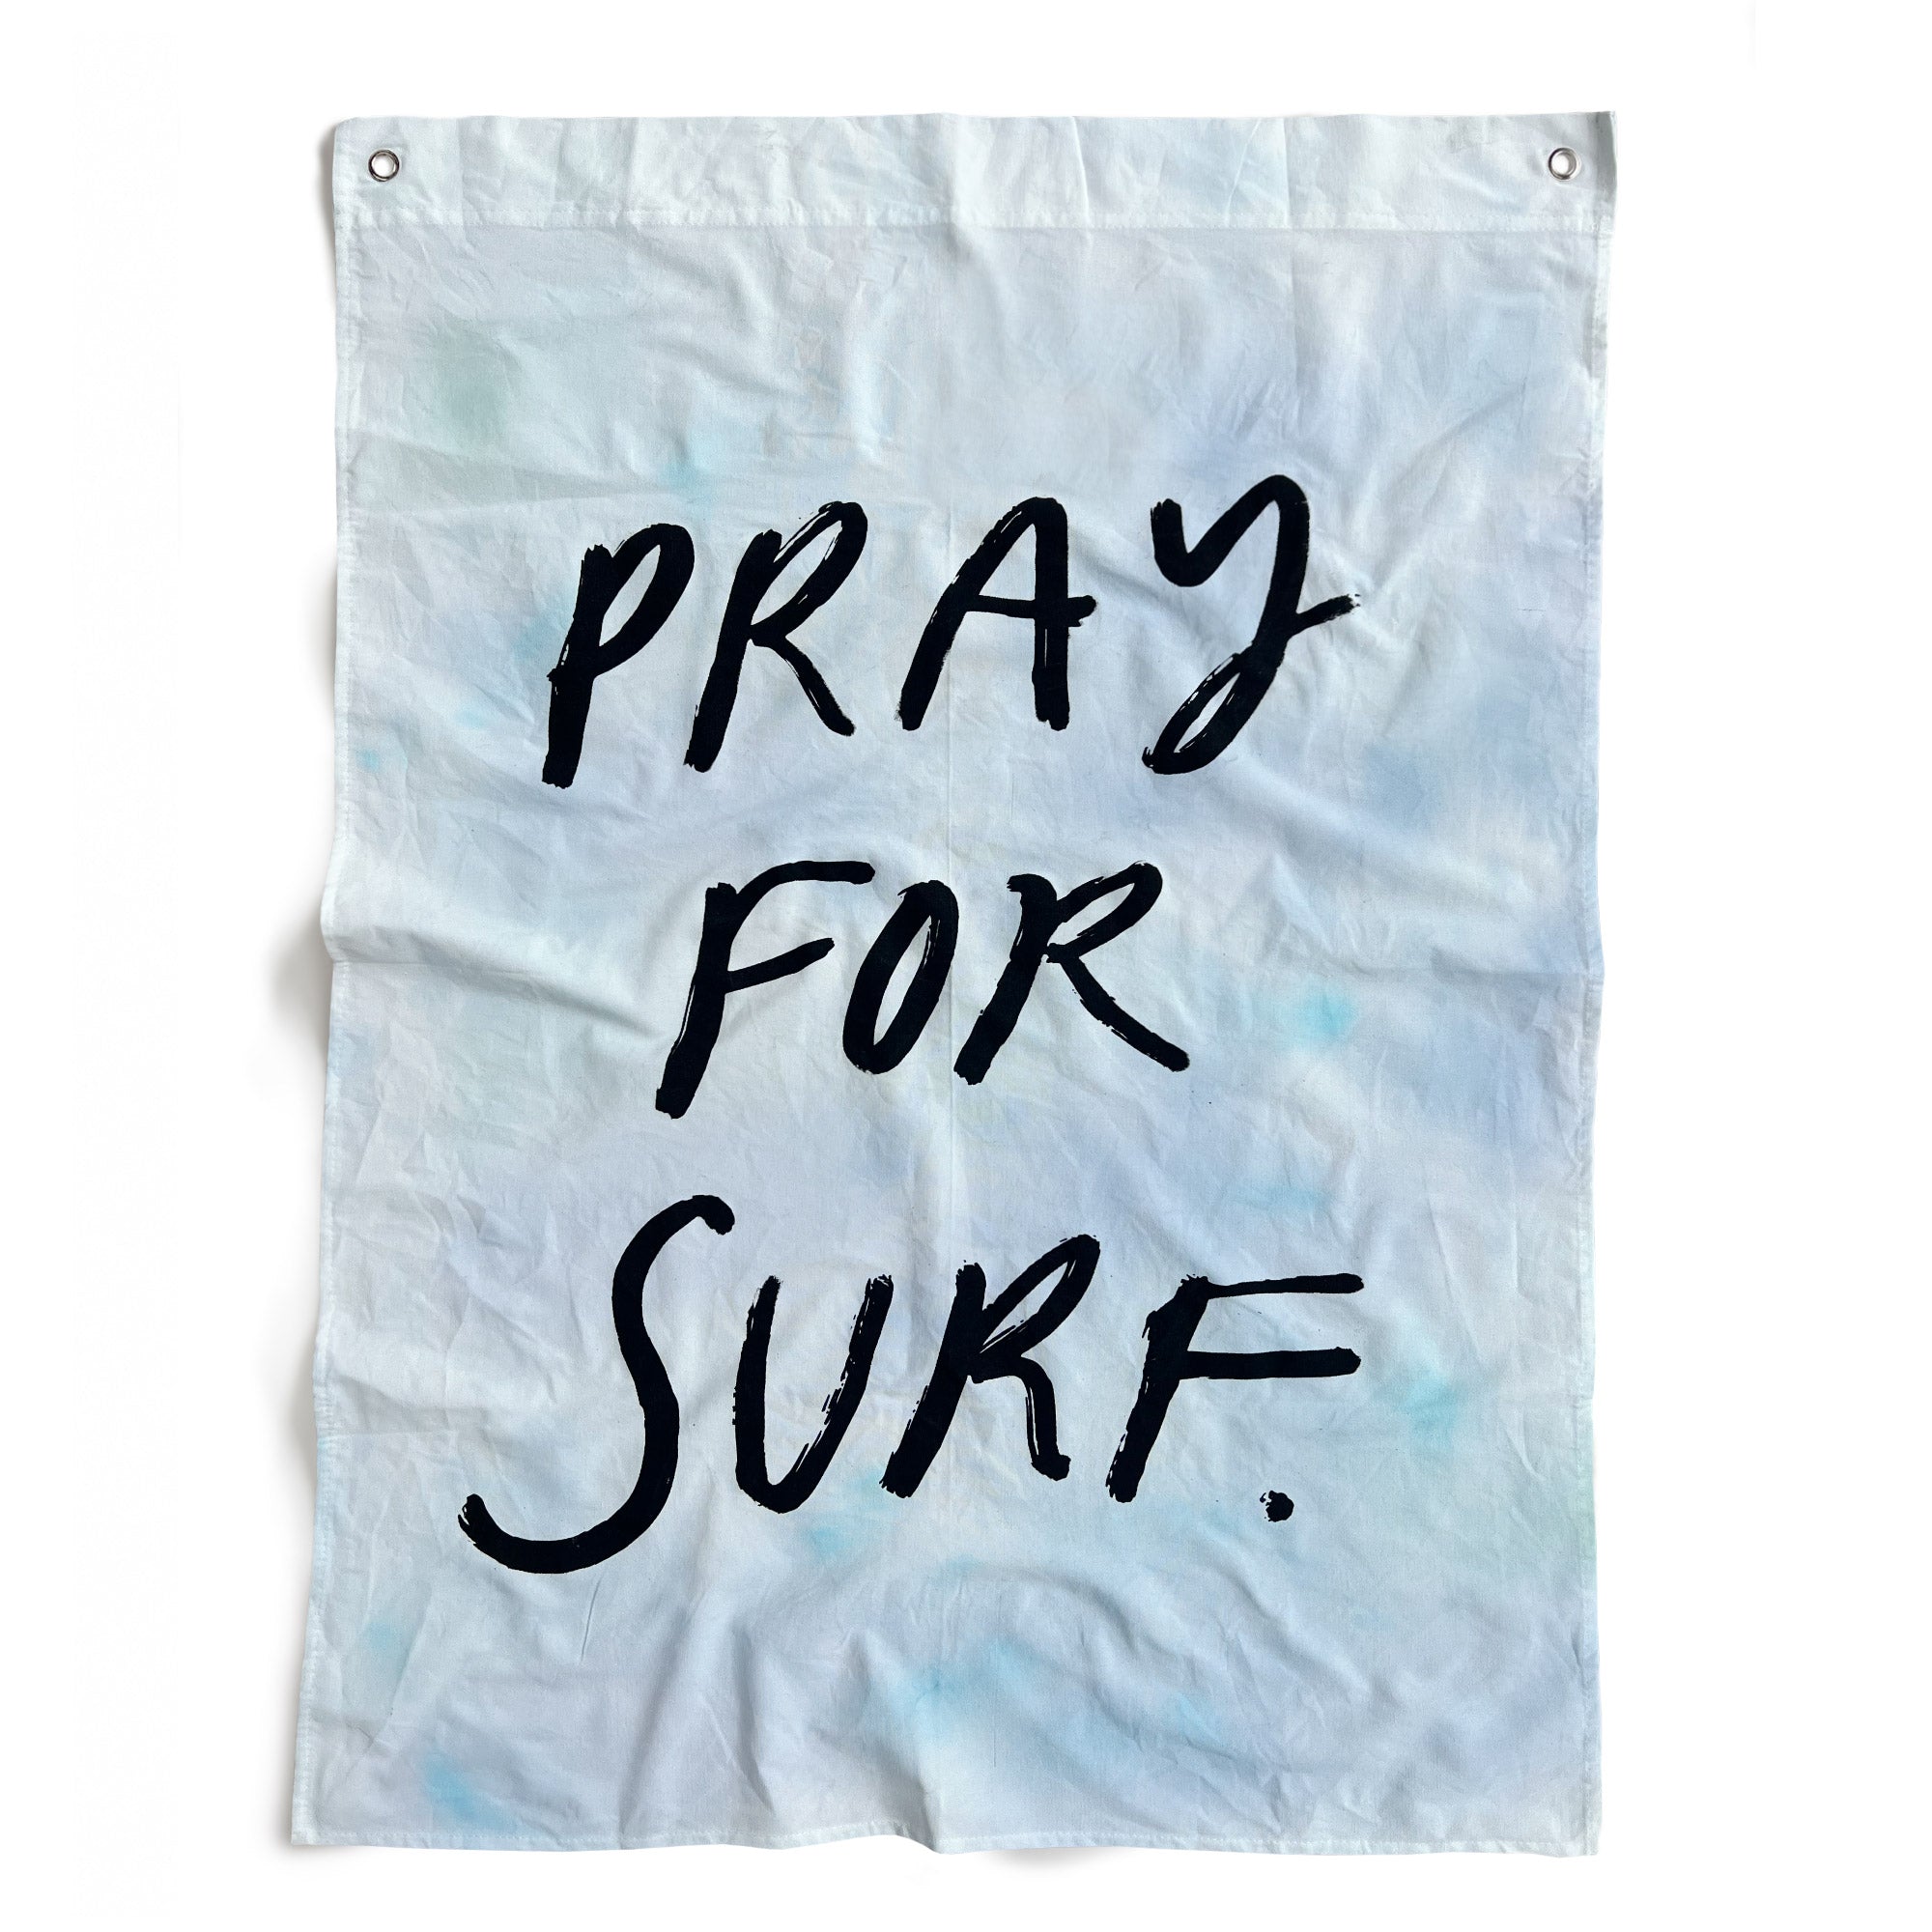 PRAY FOR SURF